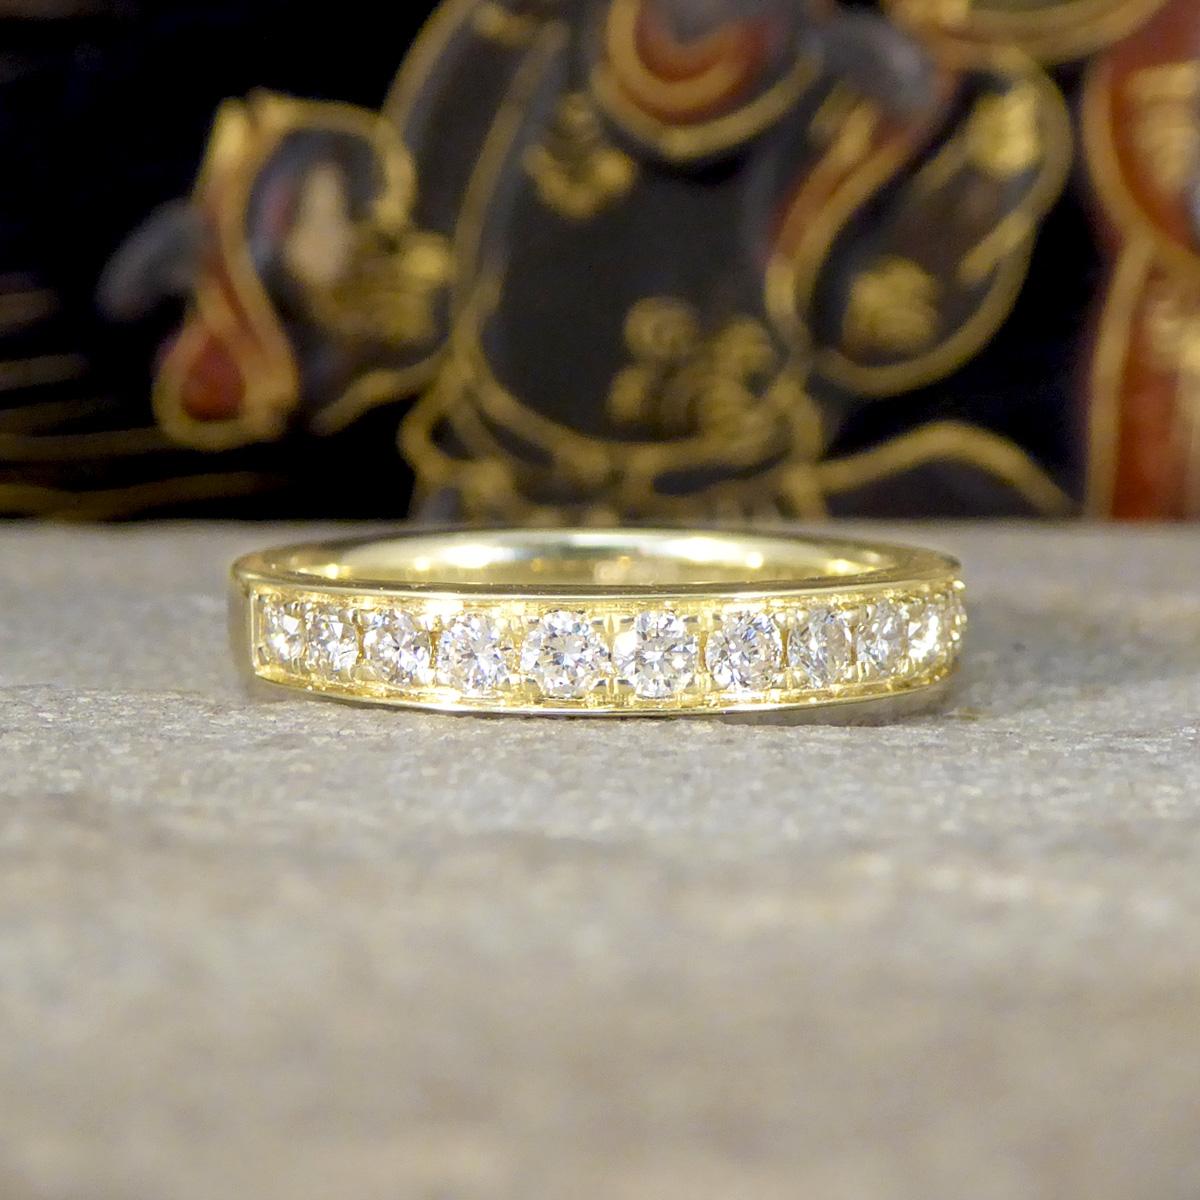 Ein exquisiter 0,50ct Diamond Half Eternity Ring. Dieser Ring ist ein zeitloses Symbol für Liebe und Raffinesse. Dieser Ring ist aus glänzendem 9-karätigem Gelbgold gefertigt und verfügt über eine klassische Kanalfassung, die einen Halbkreis aus